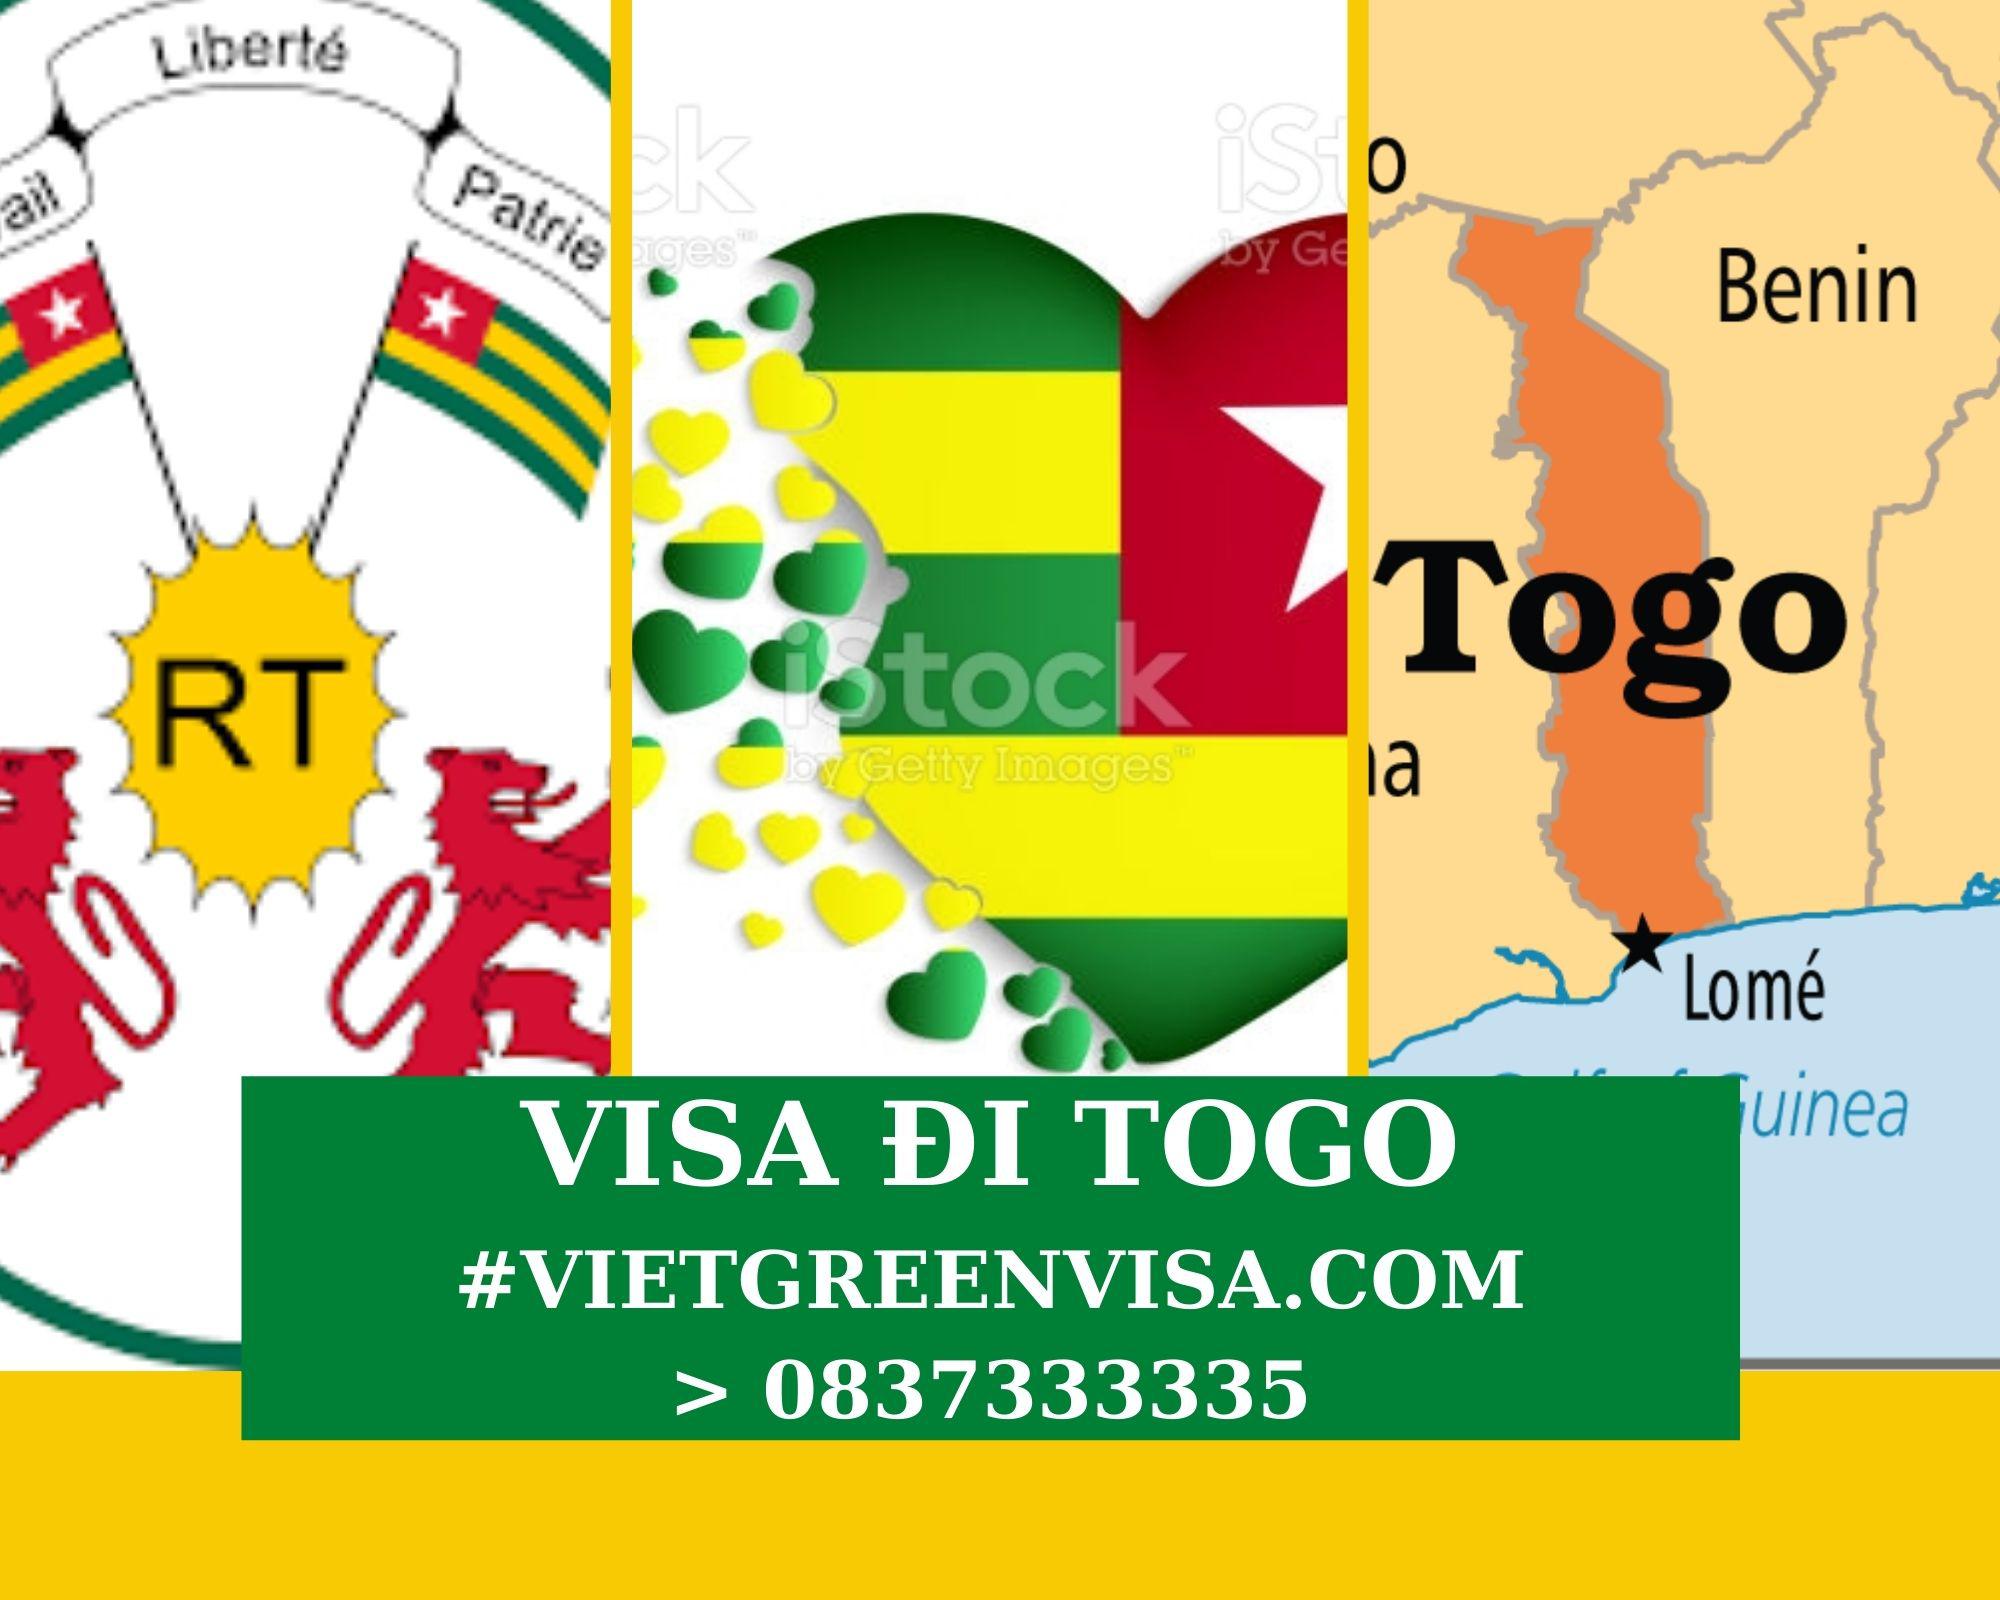 Làm Visa du lịch Togo uy tín, trọn gói, giá rẻ